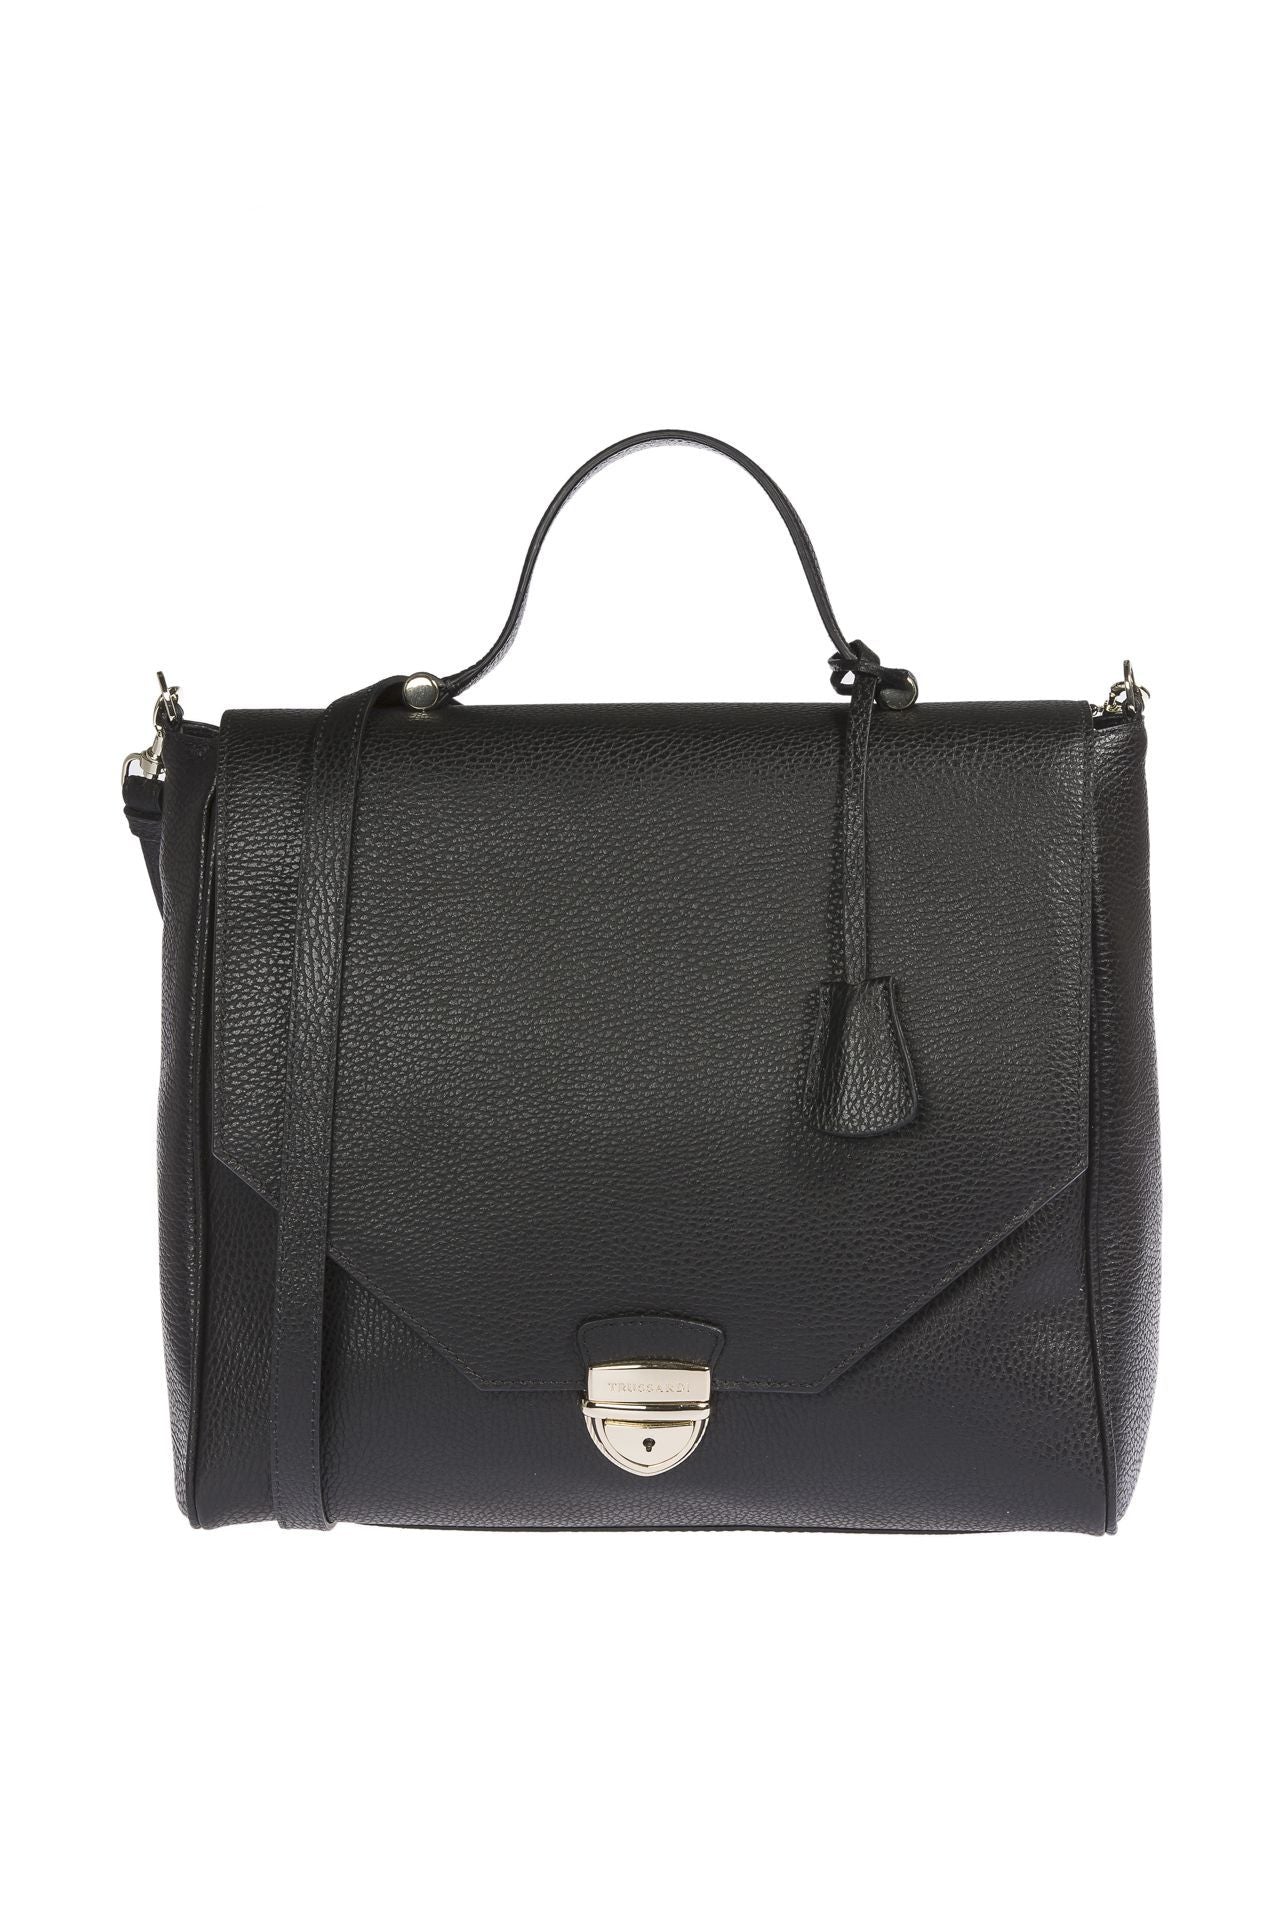 Elegant Embossed Leather Handbag